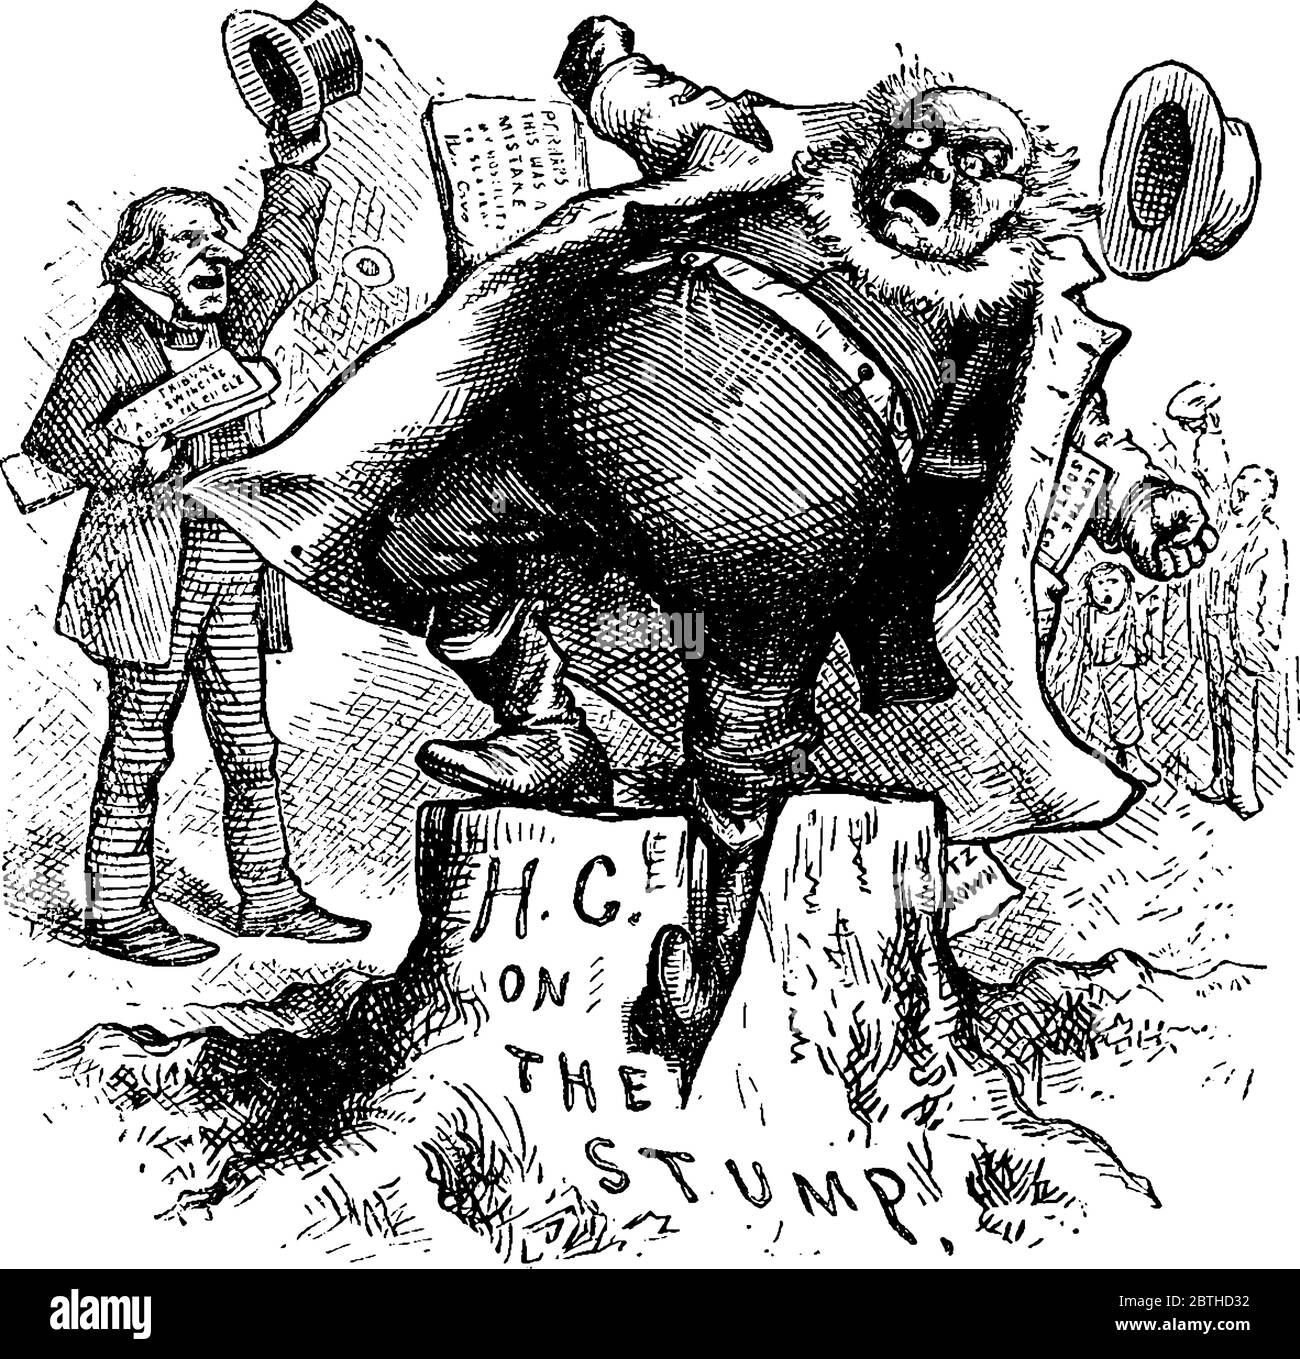 Zeichnung von Horace Greeley Slipping, er war ein amerikanischer Autor und Staatsmann, der der Gründer und Herausgeber der New-York Tribune war., Vintage-Linie zeichnen Stock Vektor